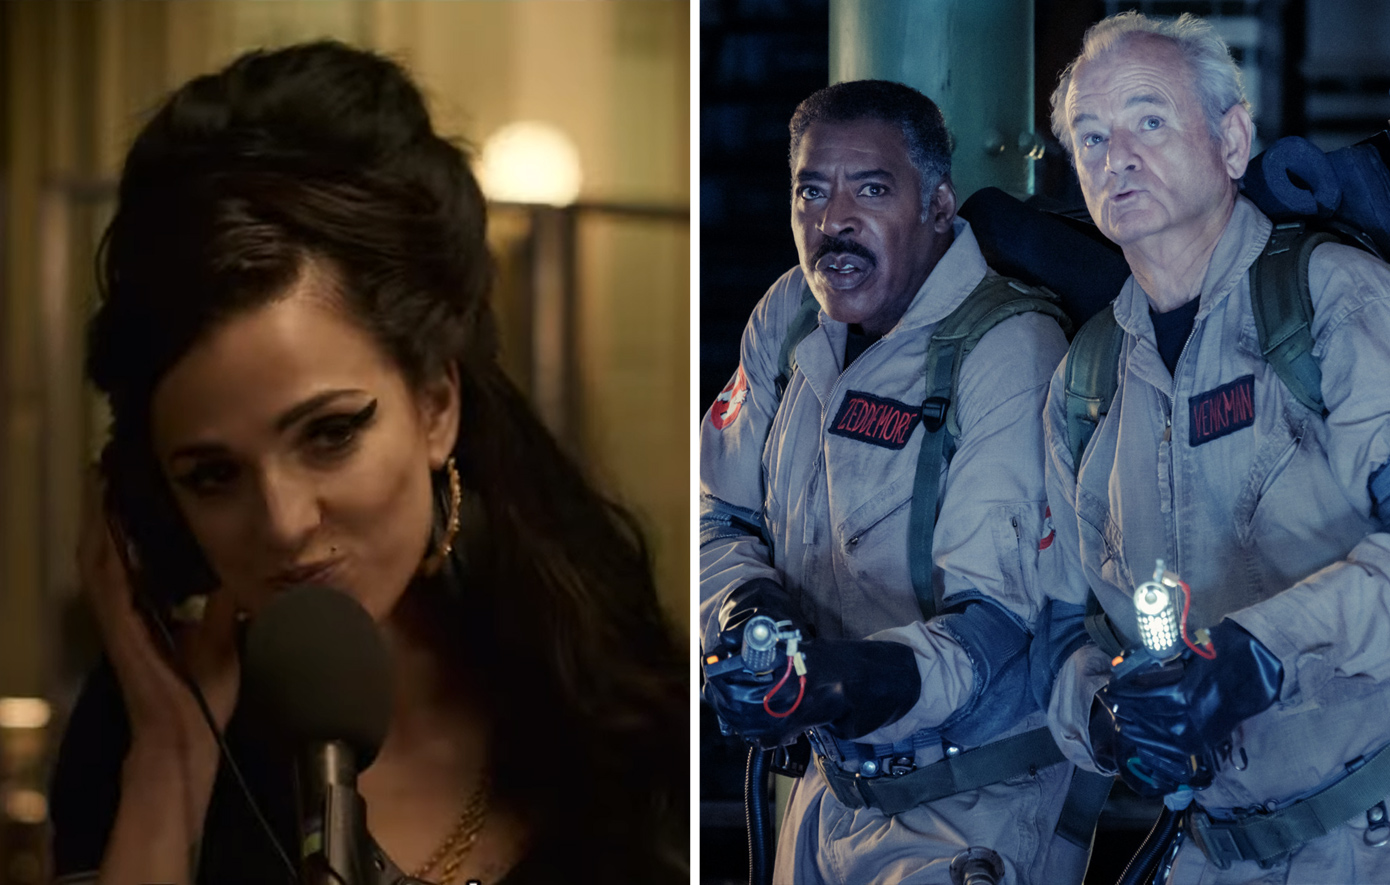 Οι νέες ταινίες της εβδομάδας: Έιμι Γουάινχαουζ και Ghostbusters είναι δύο καλοί λόγοι για να πάτε σινεμά